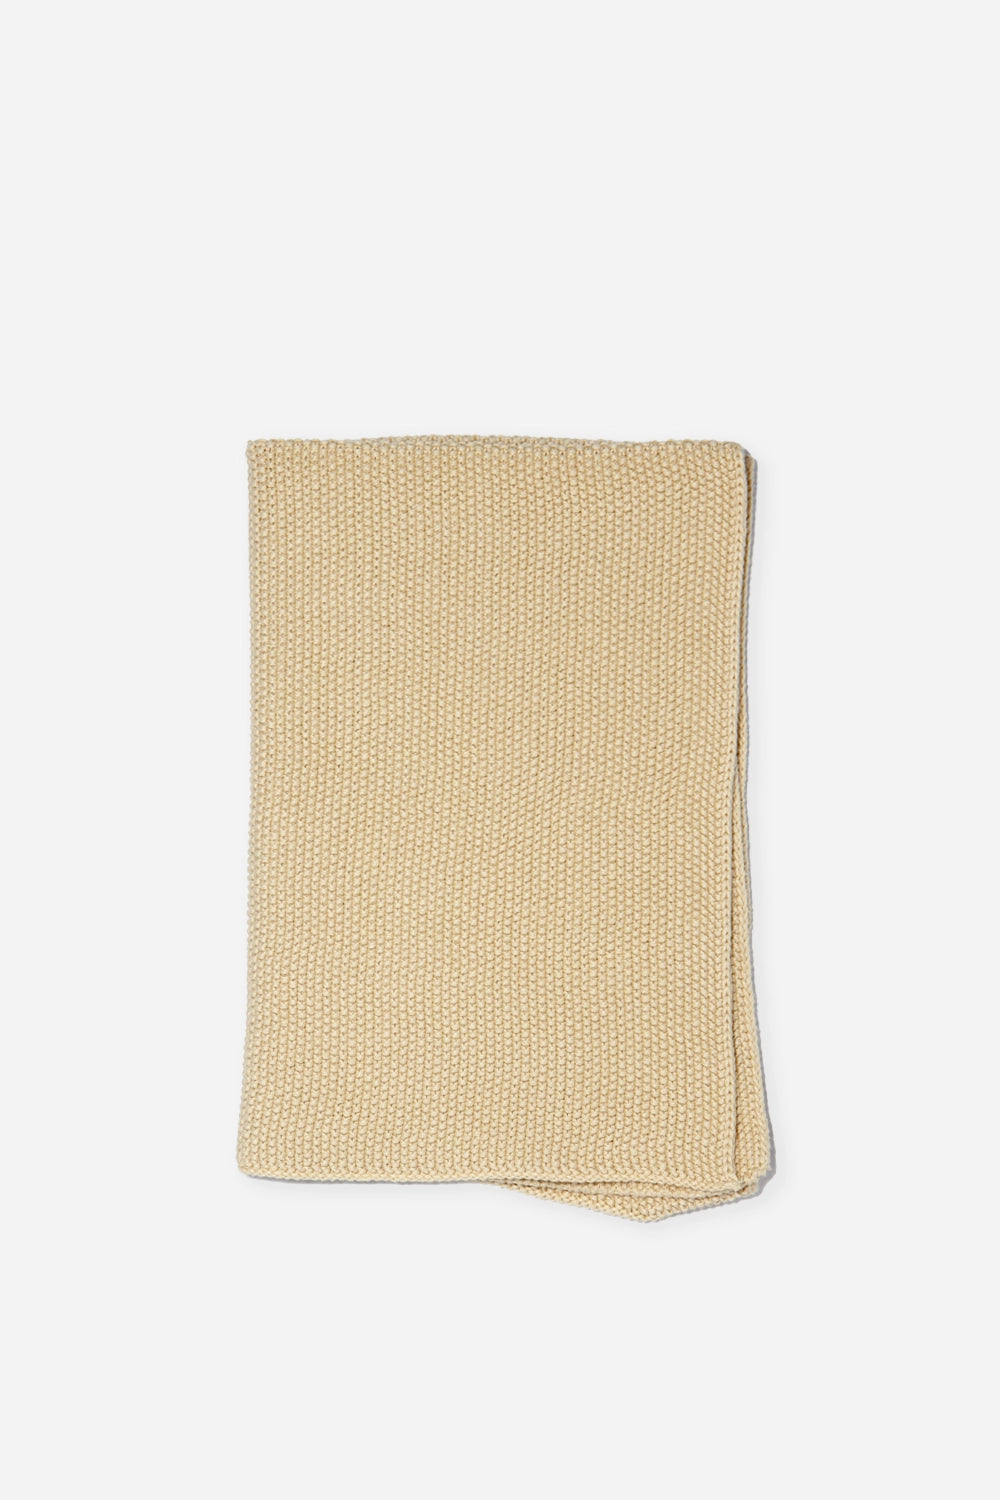 Knitted Towel / Lemonade